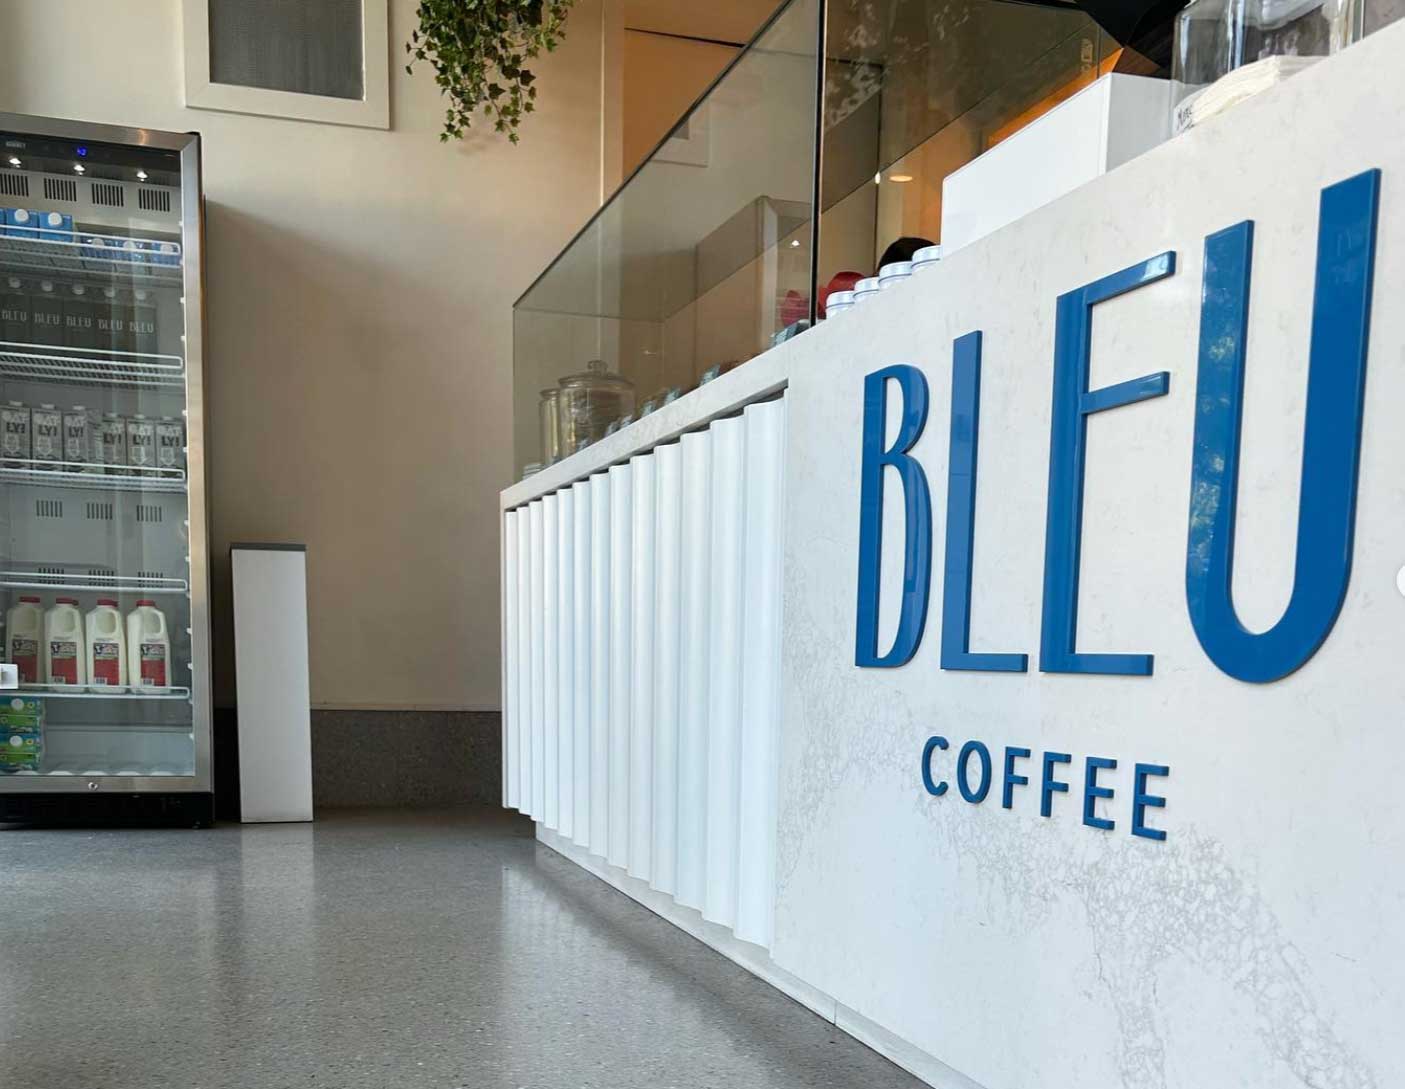 Bleu Coffee Downtown Jersey City